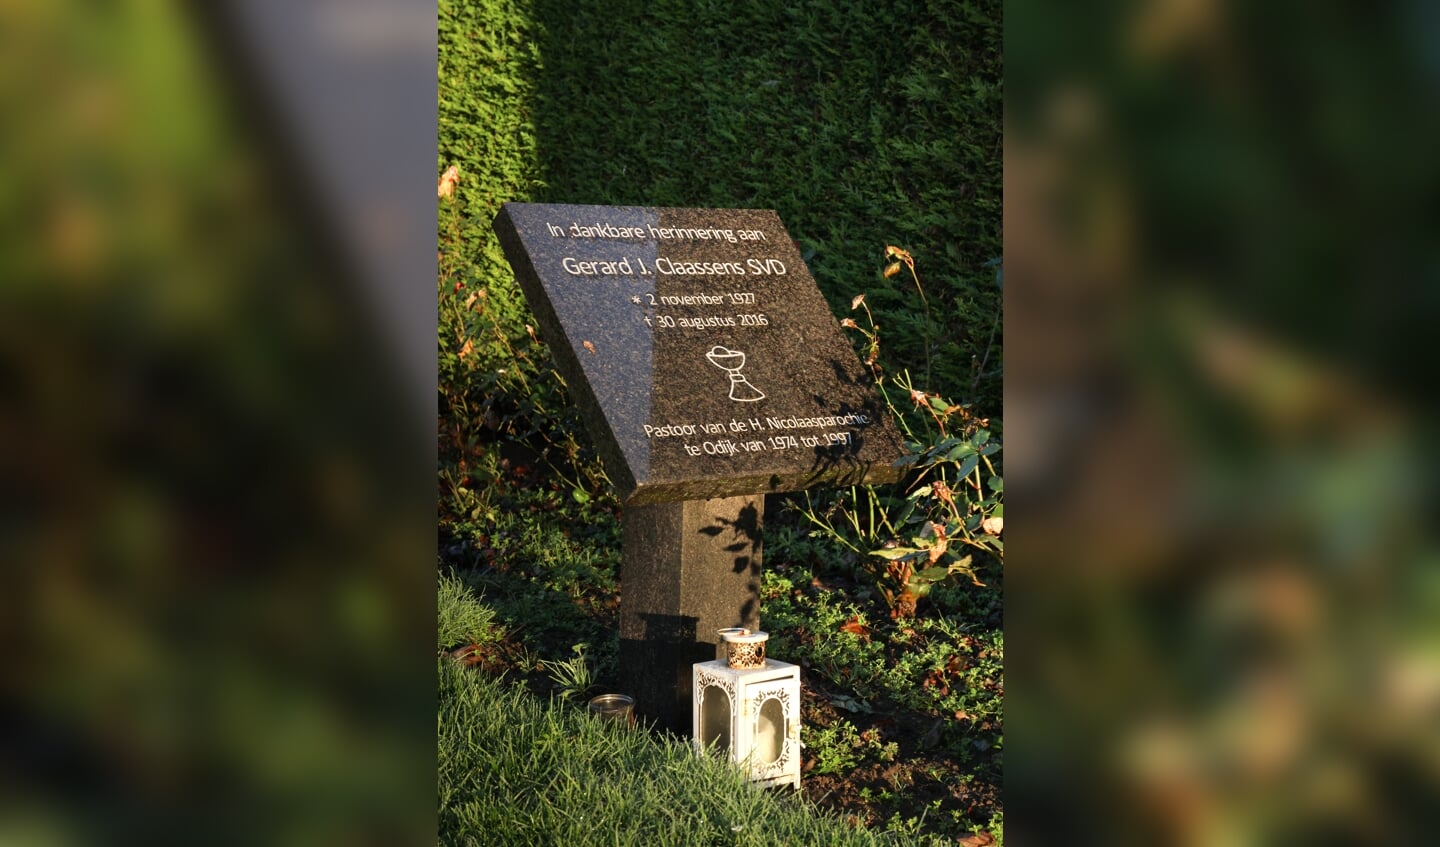 Het monument in de tuin van de H. Nicolaaskerk zoals dat na zijn dood voor Pastoor Gerard Claassens werd opgericht.